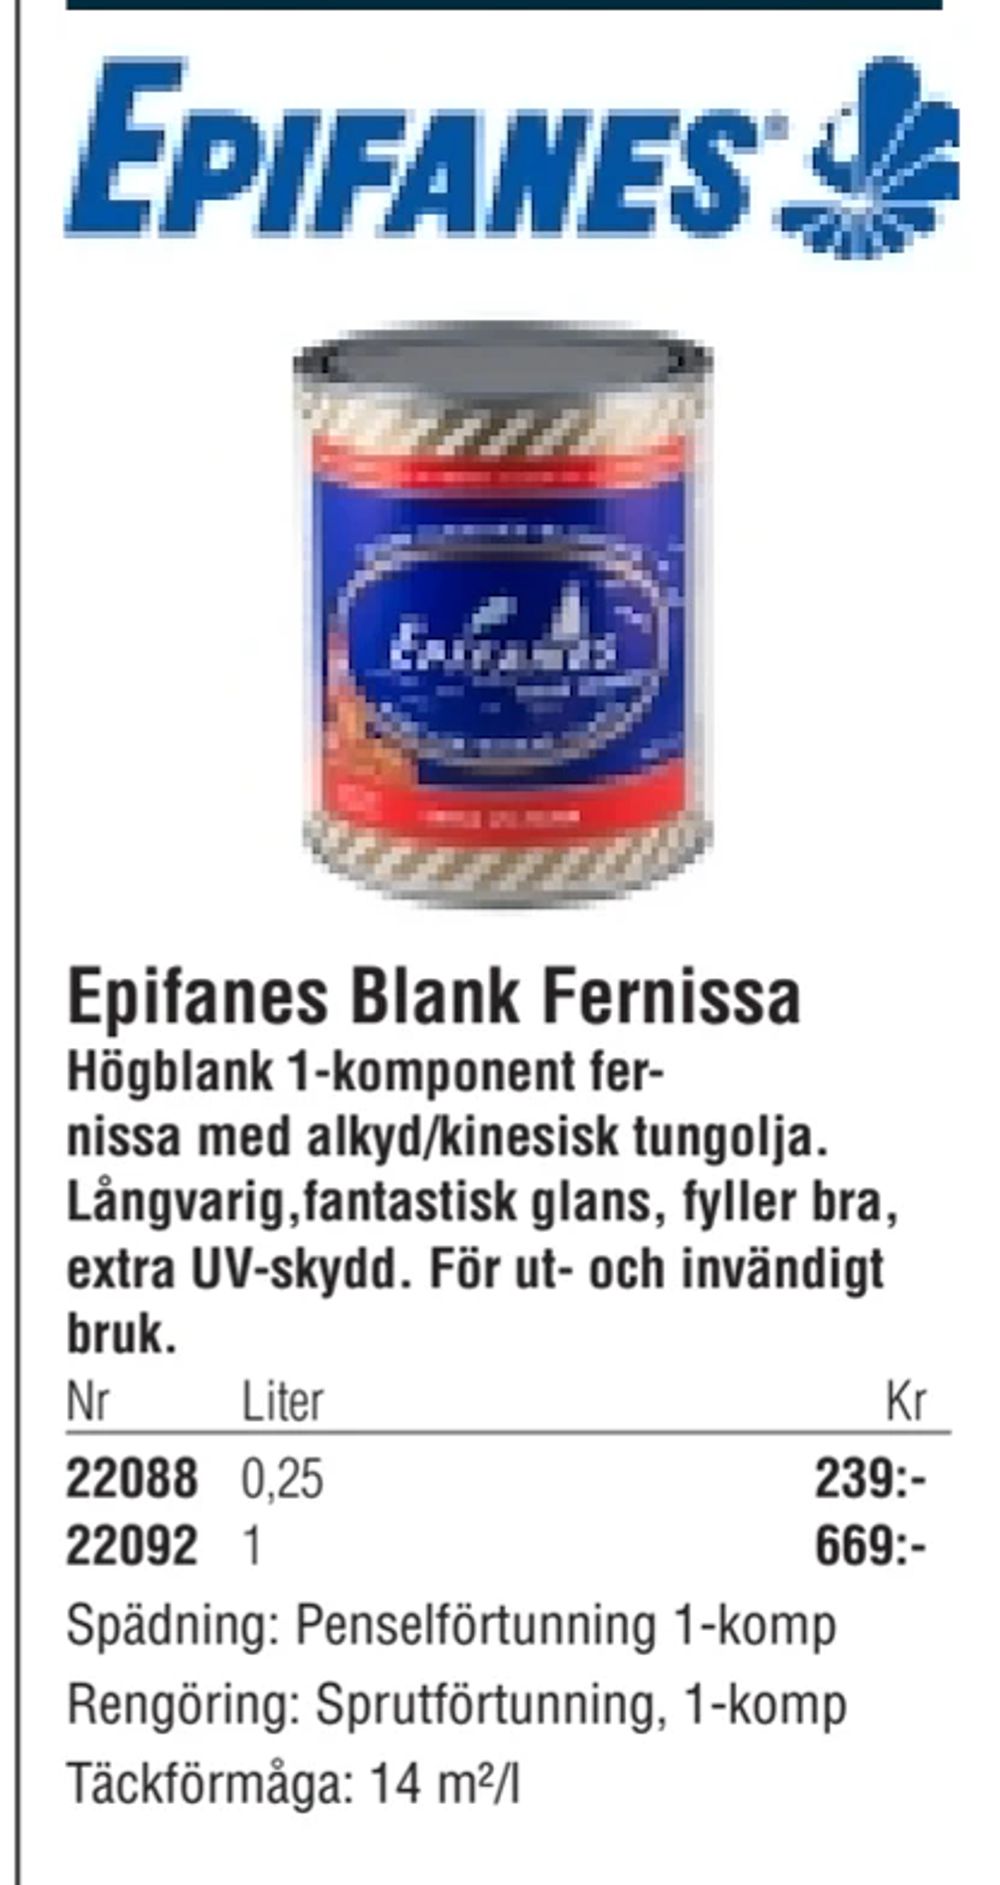 Erbjudanden på Epifanes Blank Fernissa från Erlandsons Brygga för 239 kr